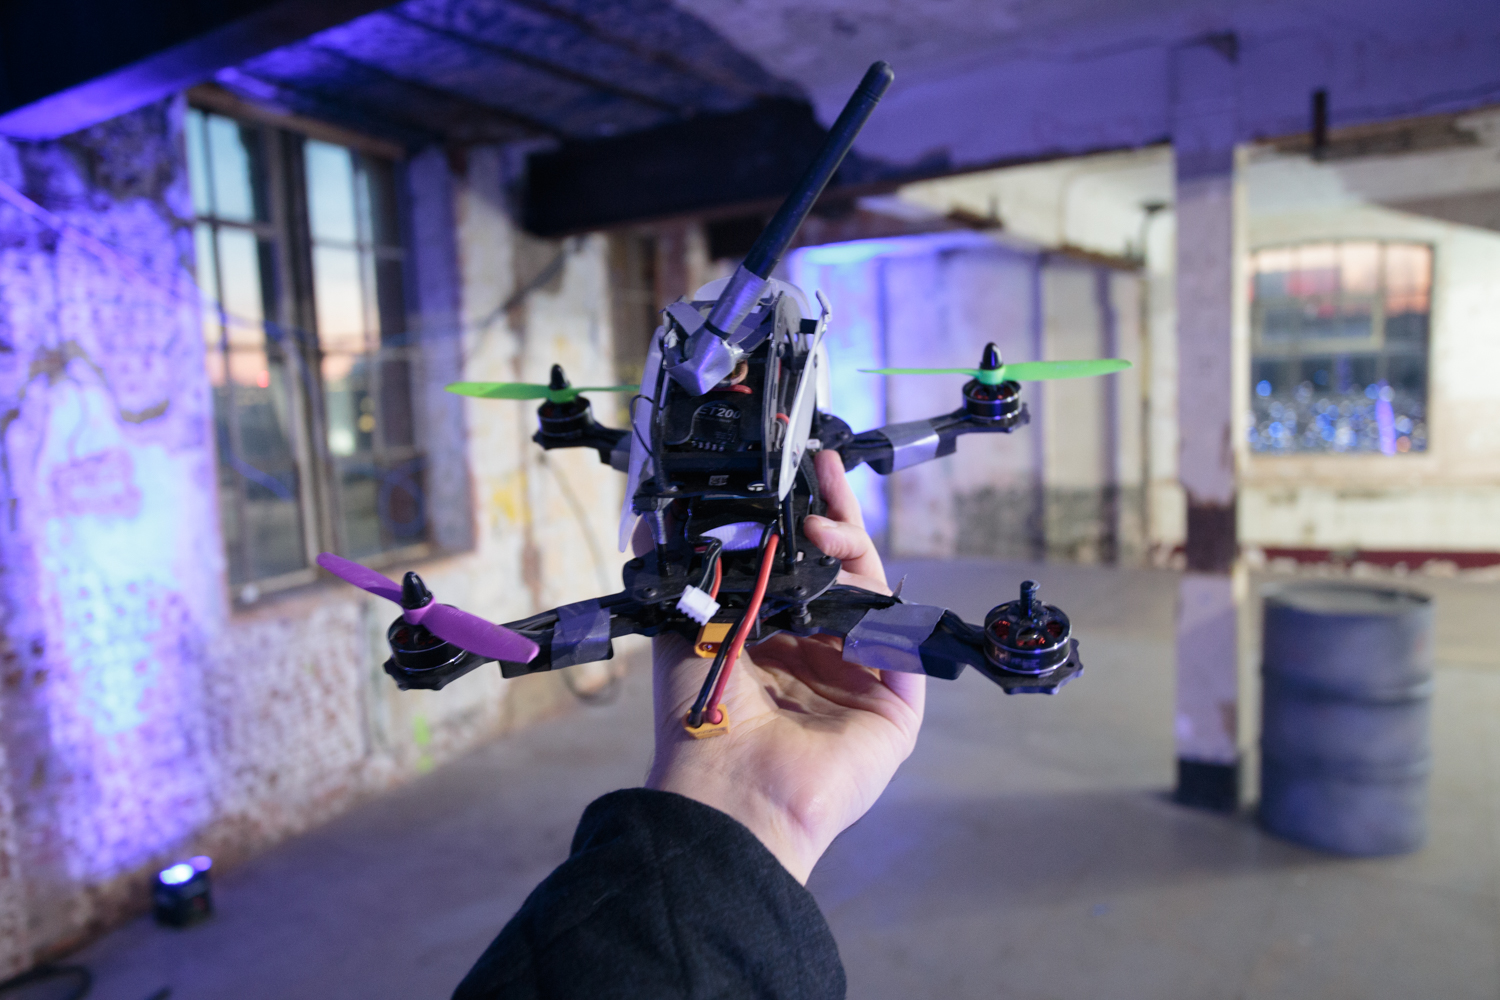 Jangan Sampai Salah, Pahami Ini Dulu Sebelum Beli Drone Racing